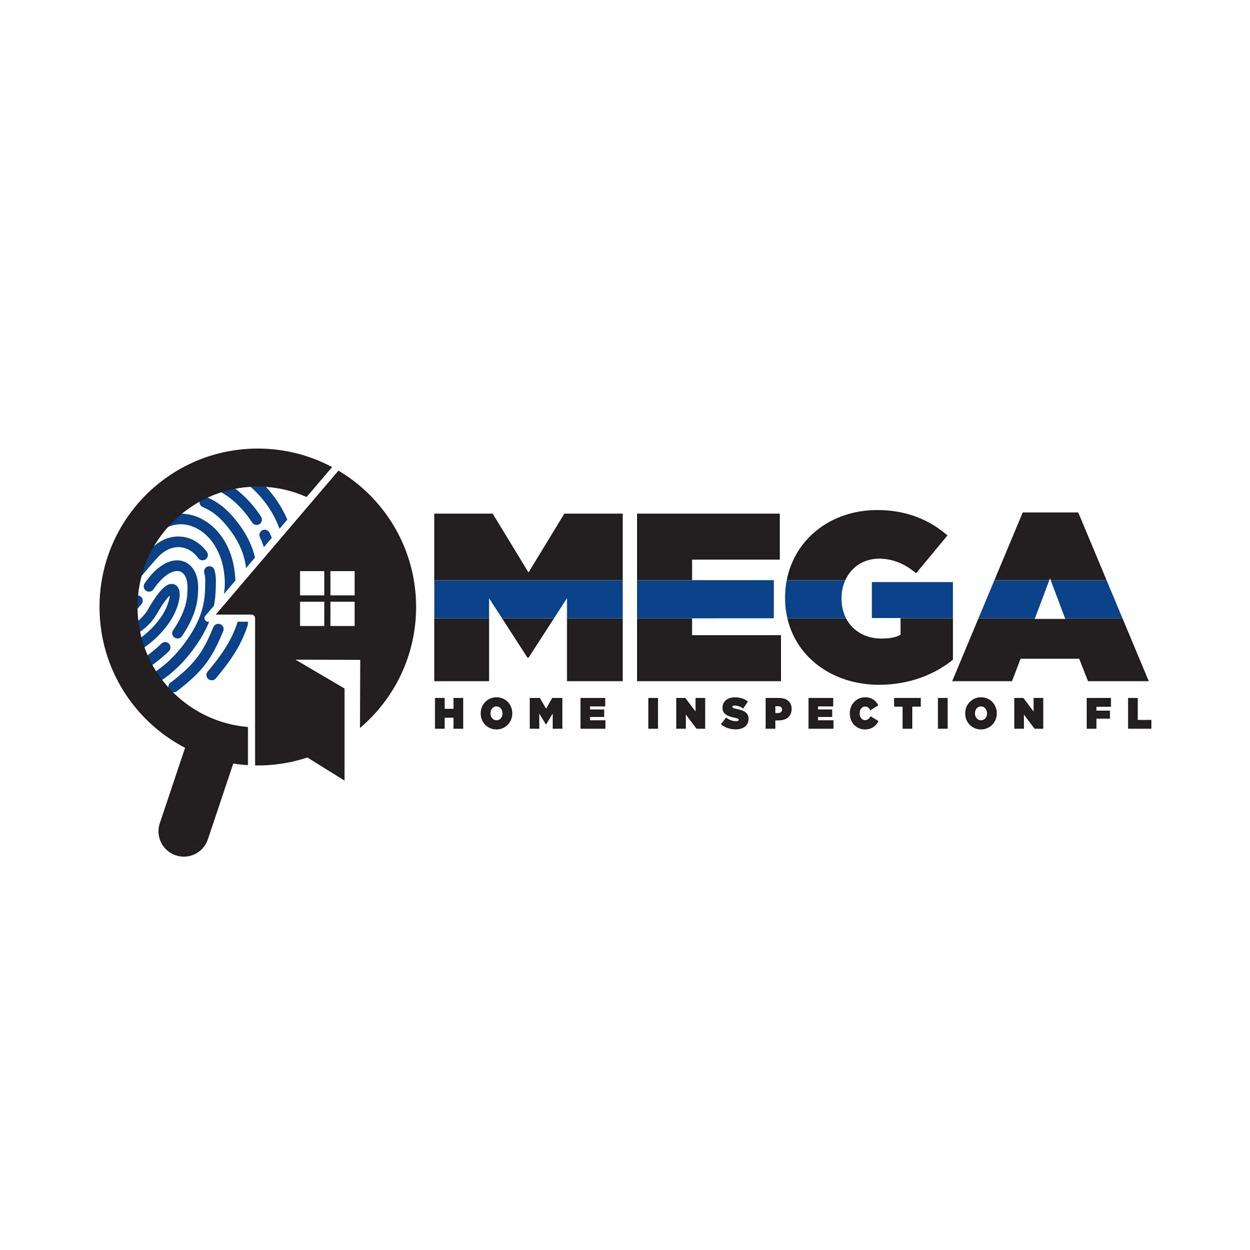 Omega Home Inspection FL Logo